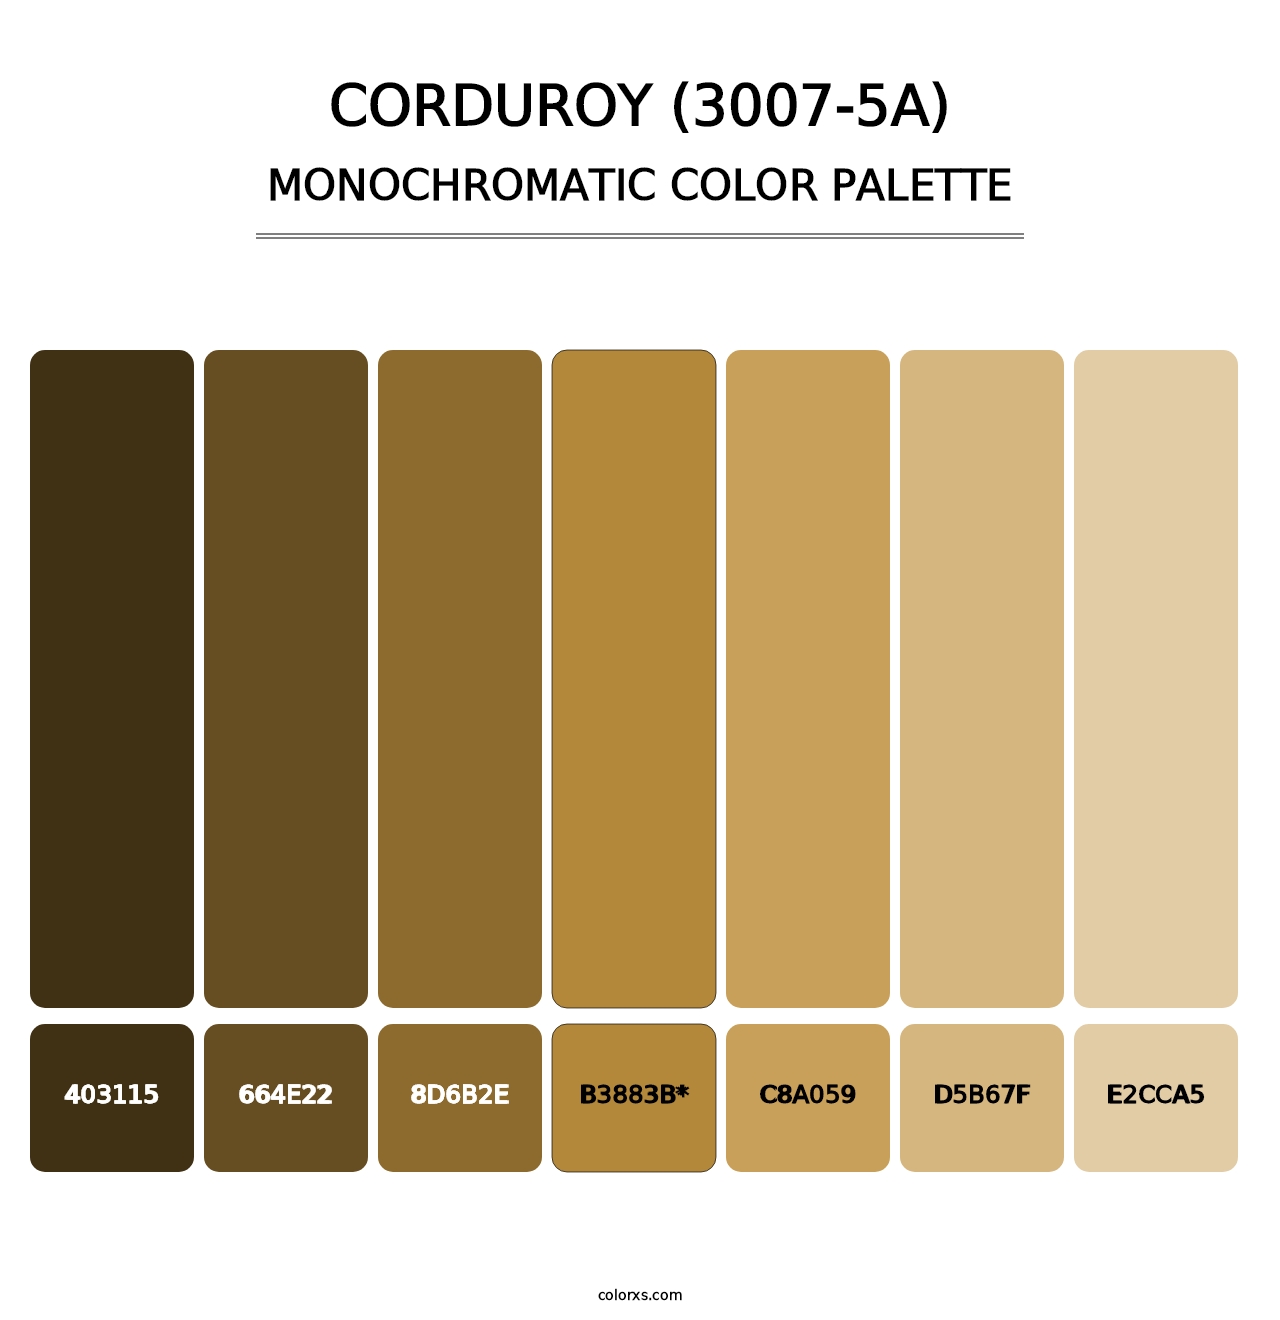 Corduroy (3007-5A) - Monochromatic Color Palette